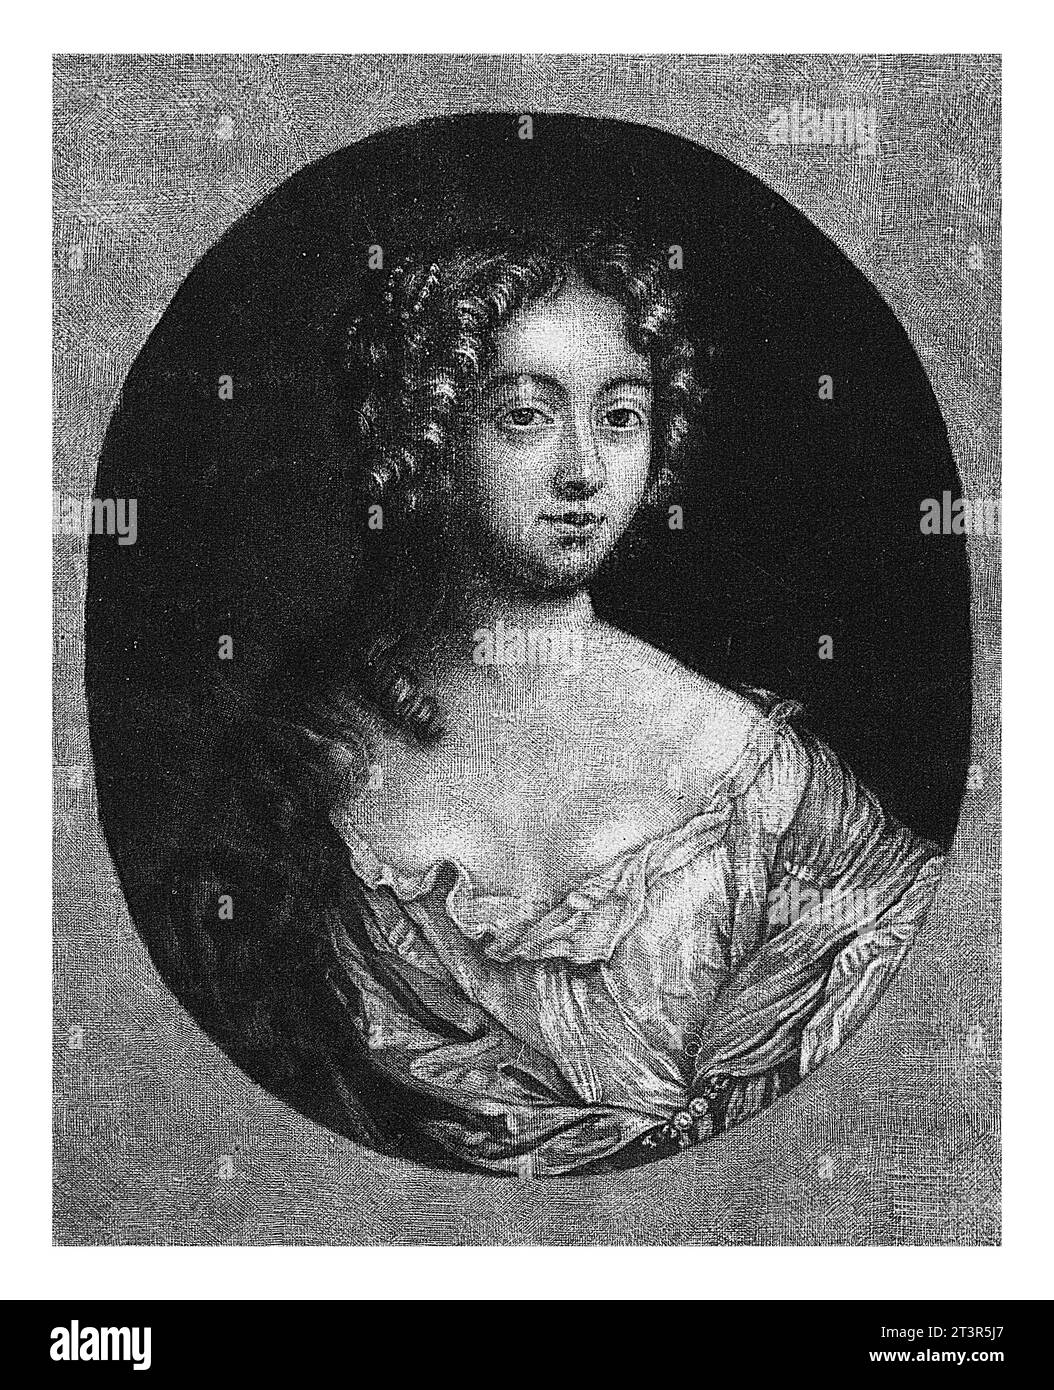 Ritratto di Louise Francoise de la Baume le Blanc de la Valliere, Jacob Gole, 1670 - 1724 Louise Francoise de la Baume le Blanc, Duchessa di la Vallier Foto Stock